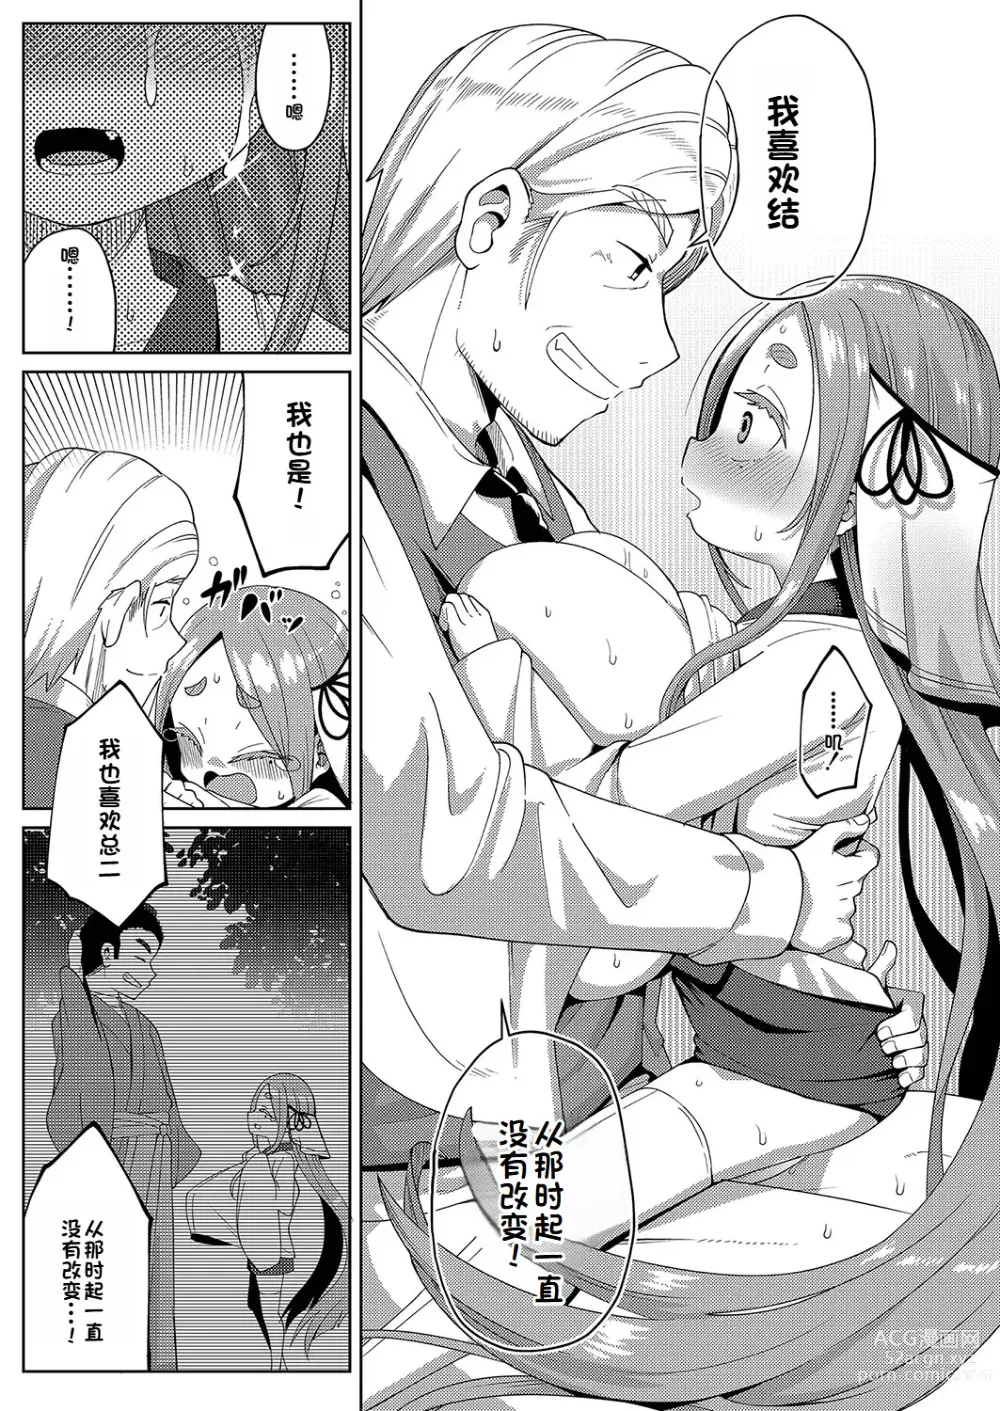 Page 25 of manga Yui